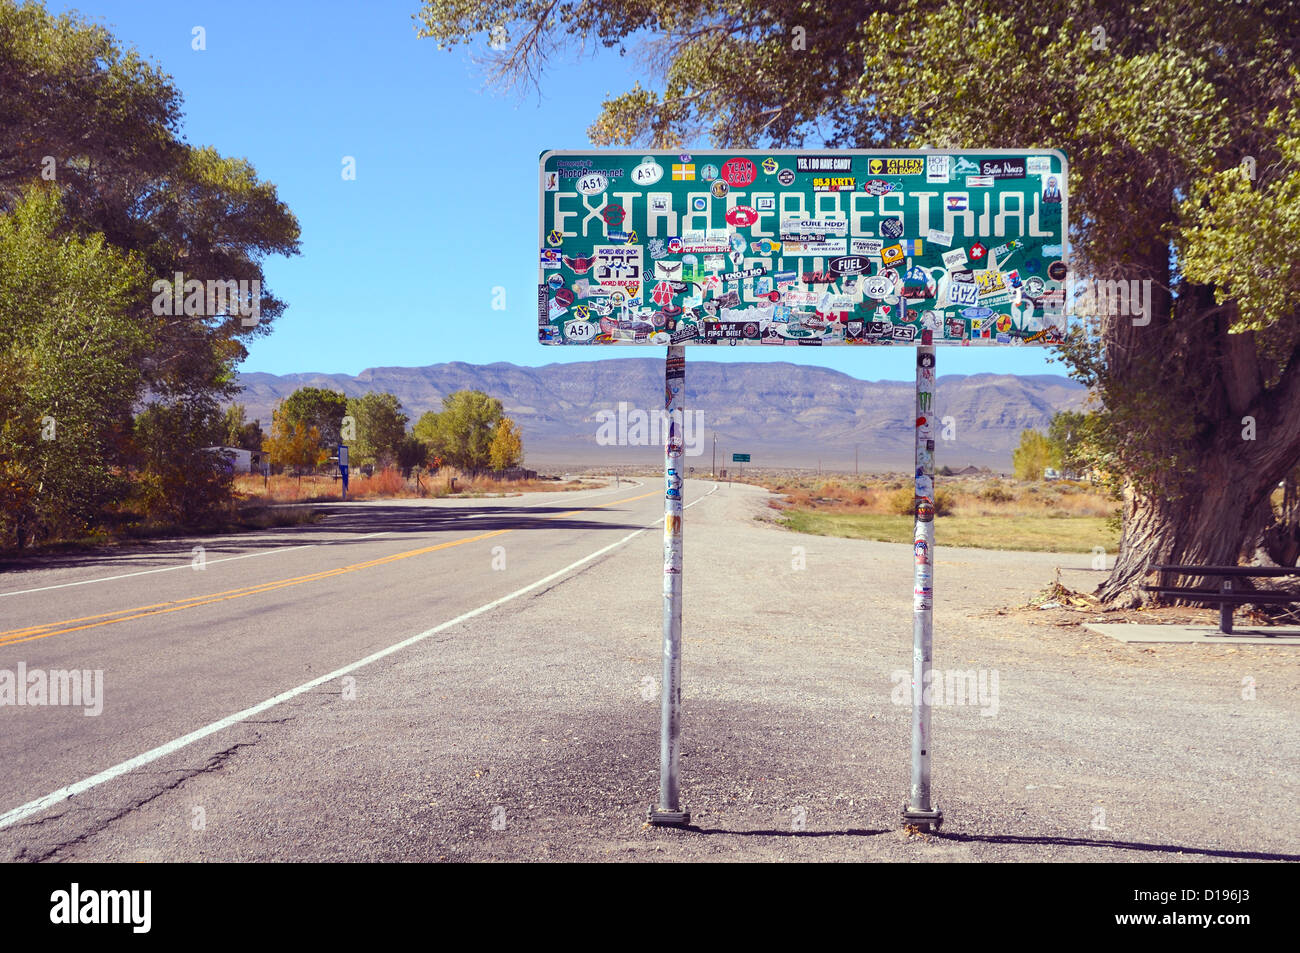 L 'Autostrada extraterrestre " Stato di Nevada Route 375 conduce alla zona di '51' - e al di là! Foto Stock